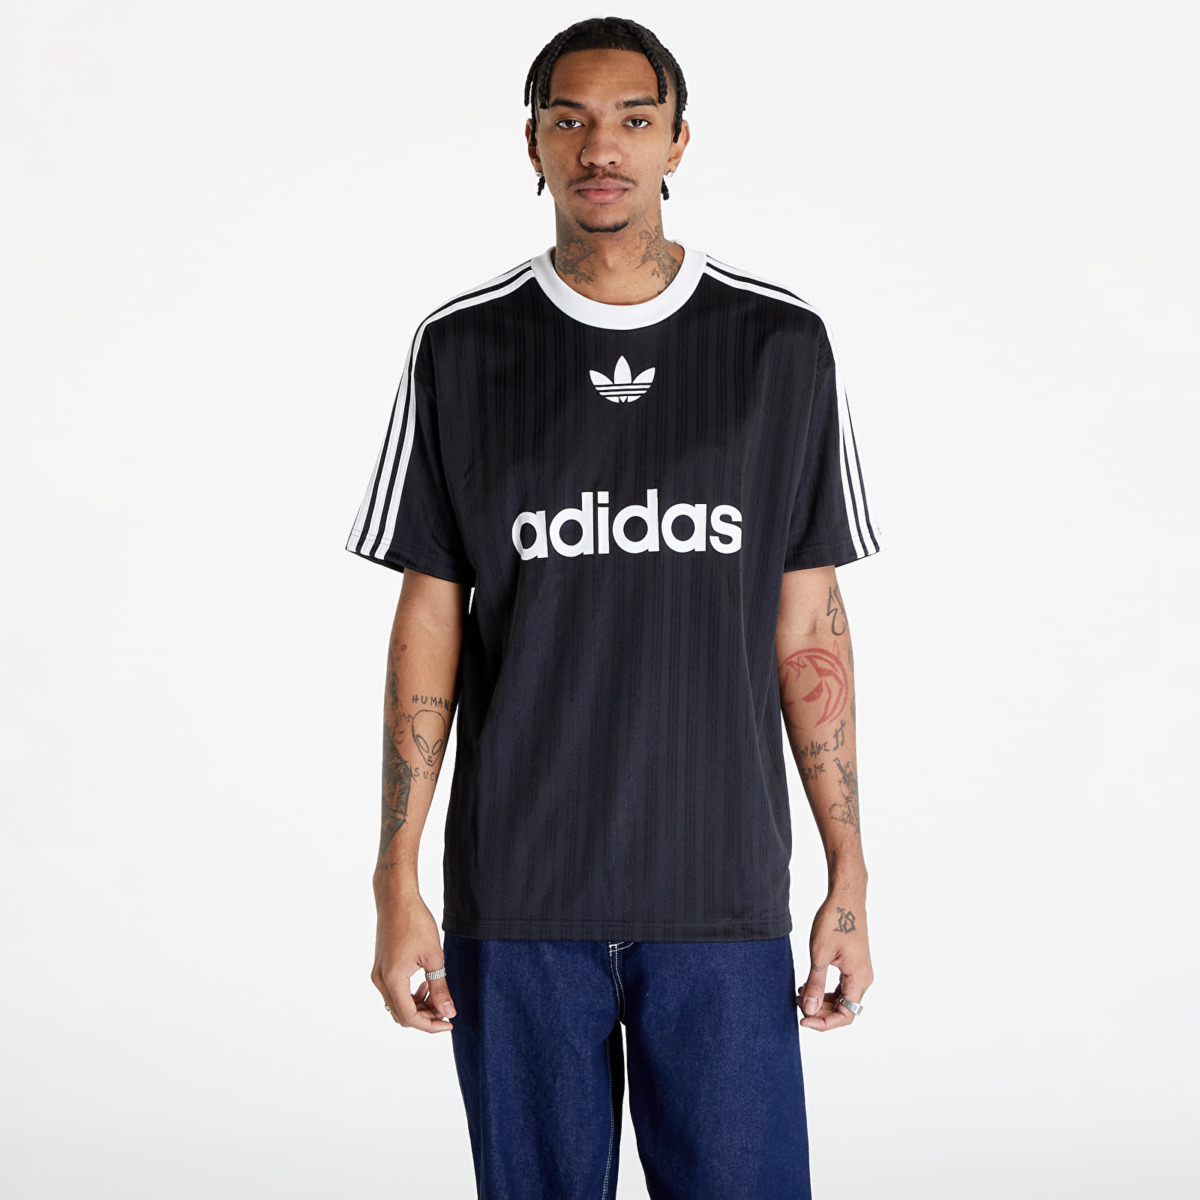 Adidas - Black Top for Man at Footshop GOOFASH